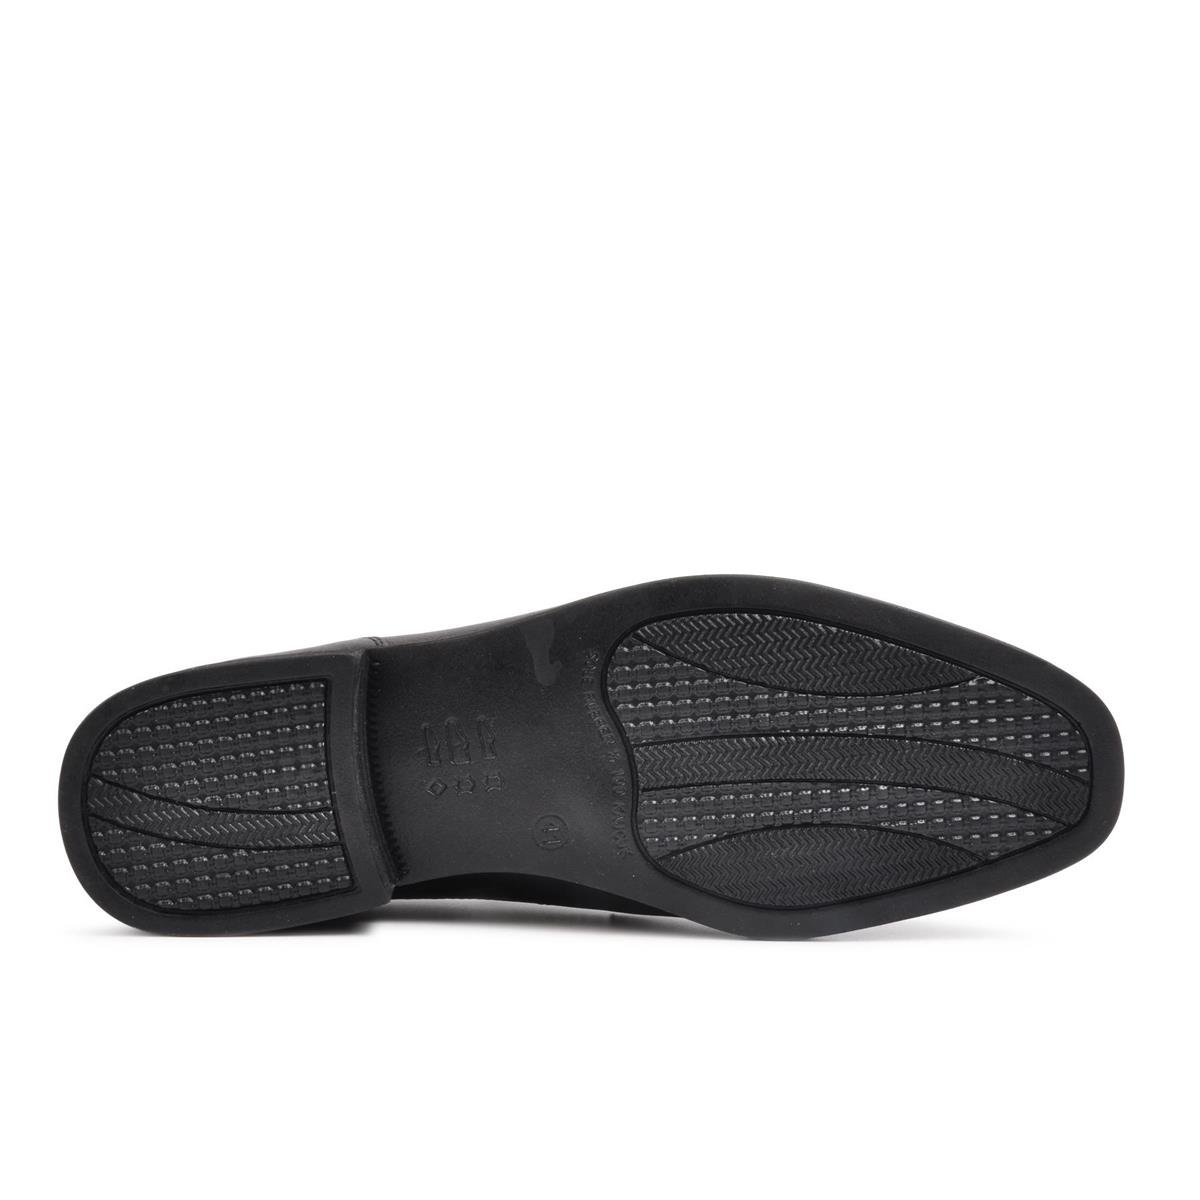 Burç 0685 Siyah Erkek Hakiki Deri Klasik Ayakkabı - Ayakmod